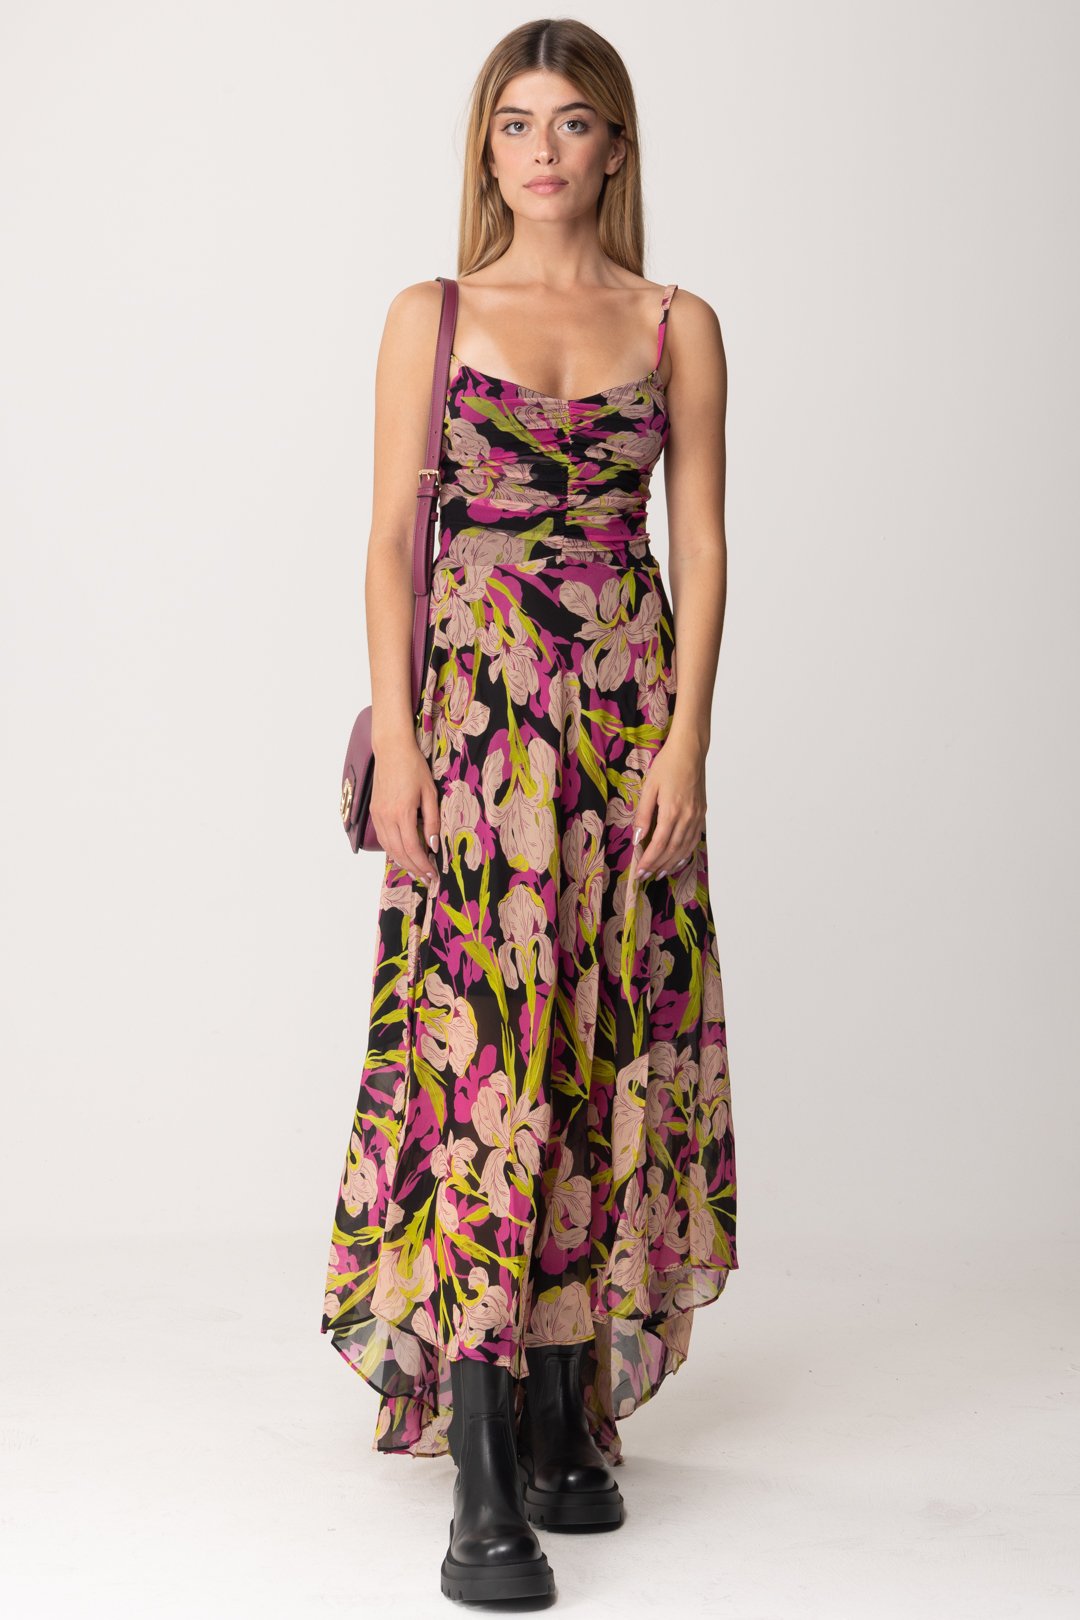 Vorschau: Pinko Langes Kleid mit Iris-Print MULT NERO/FUXIA